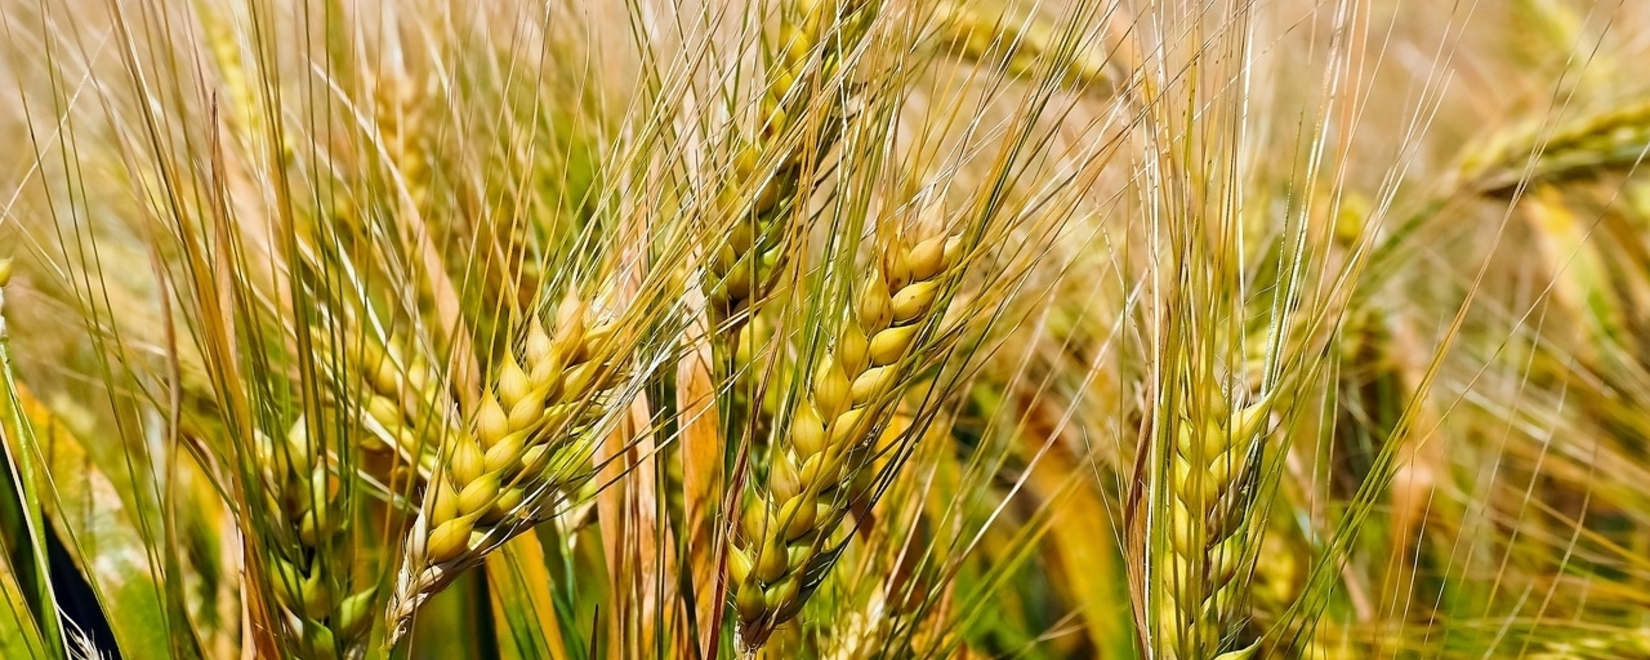 Египет готов экспортировать пшеницу из России в арабские страны, пишут СМИ